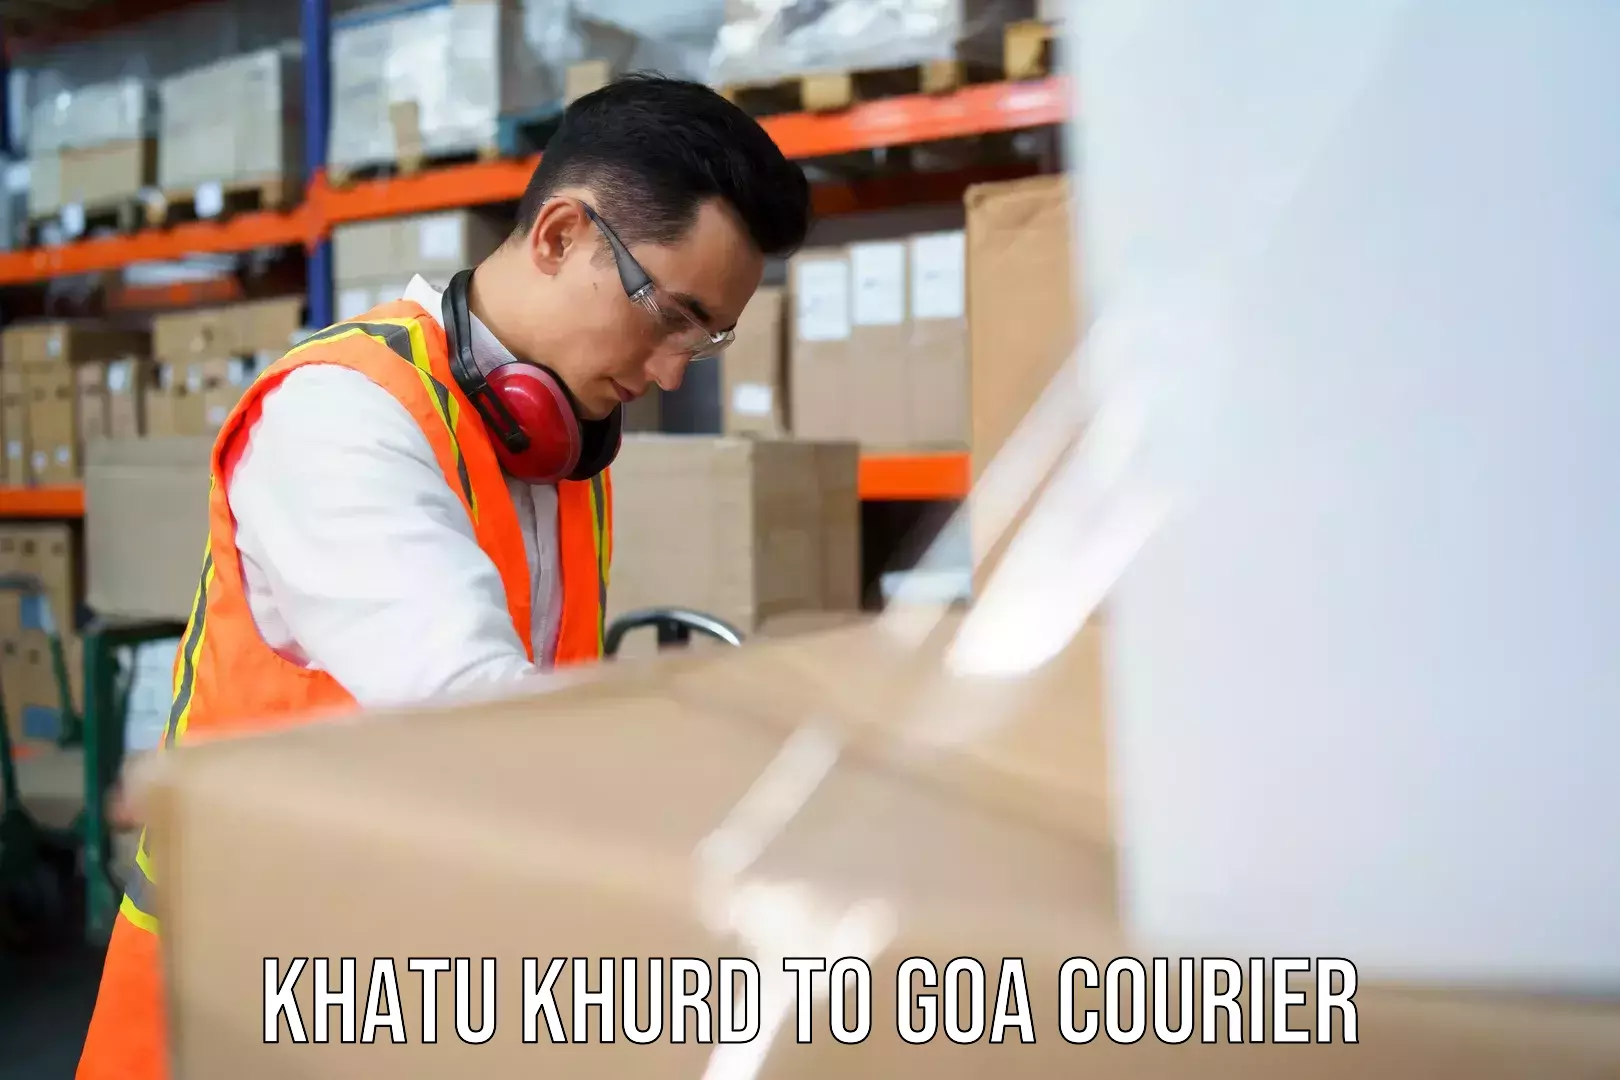 Business courier solutions Khatu Khurd to Mormugao Port